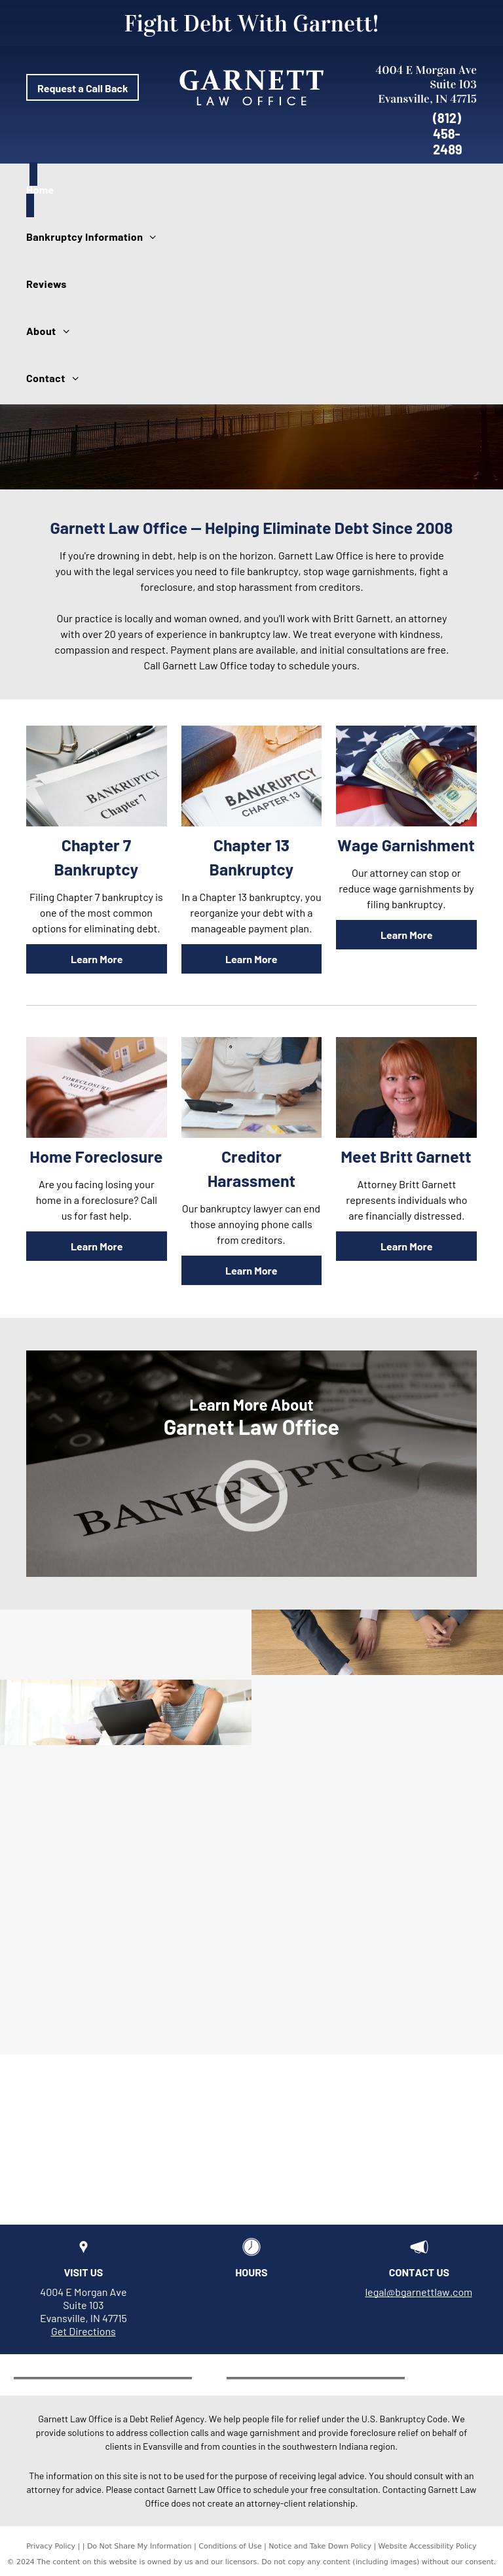 Garnett Law Office - Evansville IN Lawyers